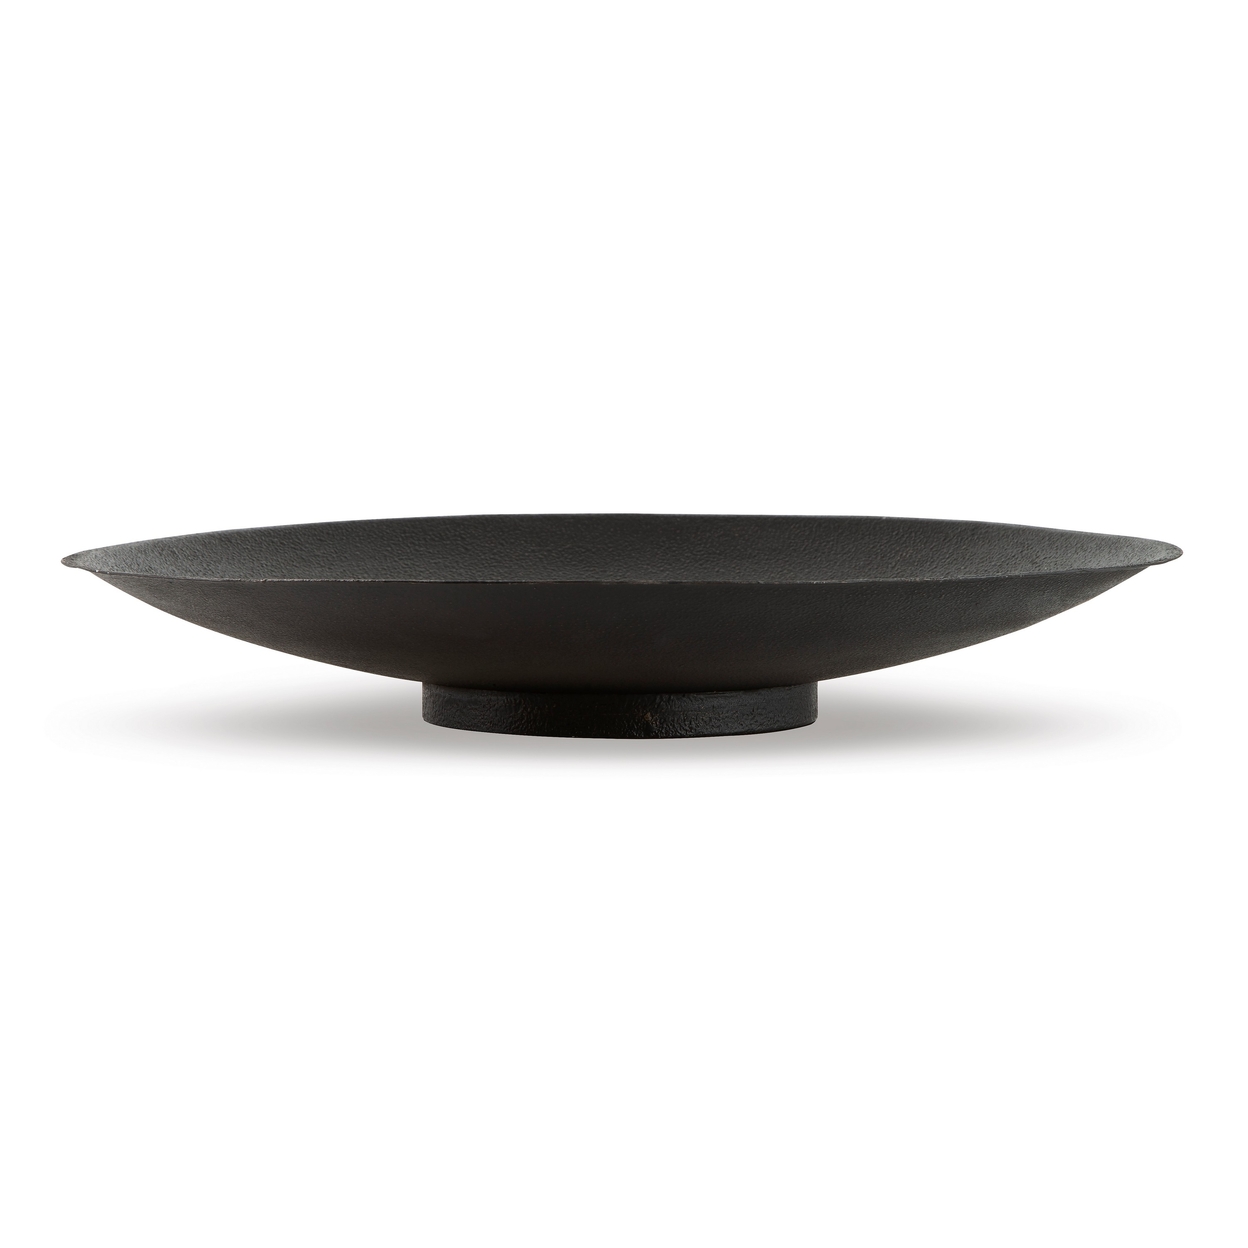 20 Inch Modern Display Bowl, Antiqued Metal Design, Warm Dark Brown Finish- Saltoro Sherpi